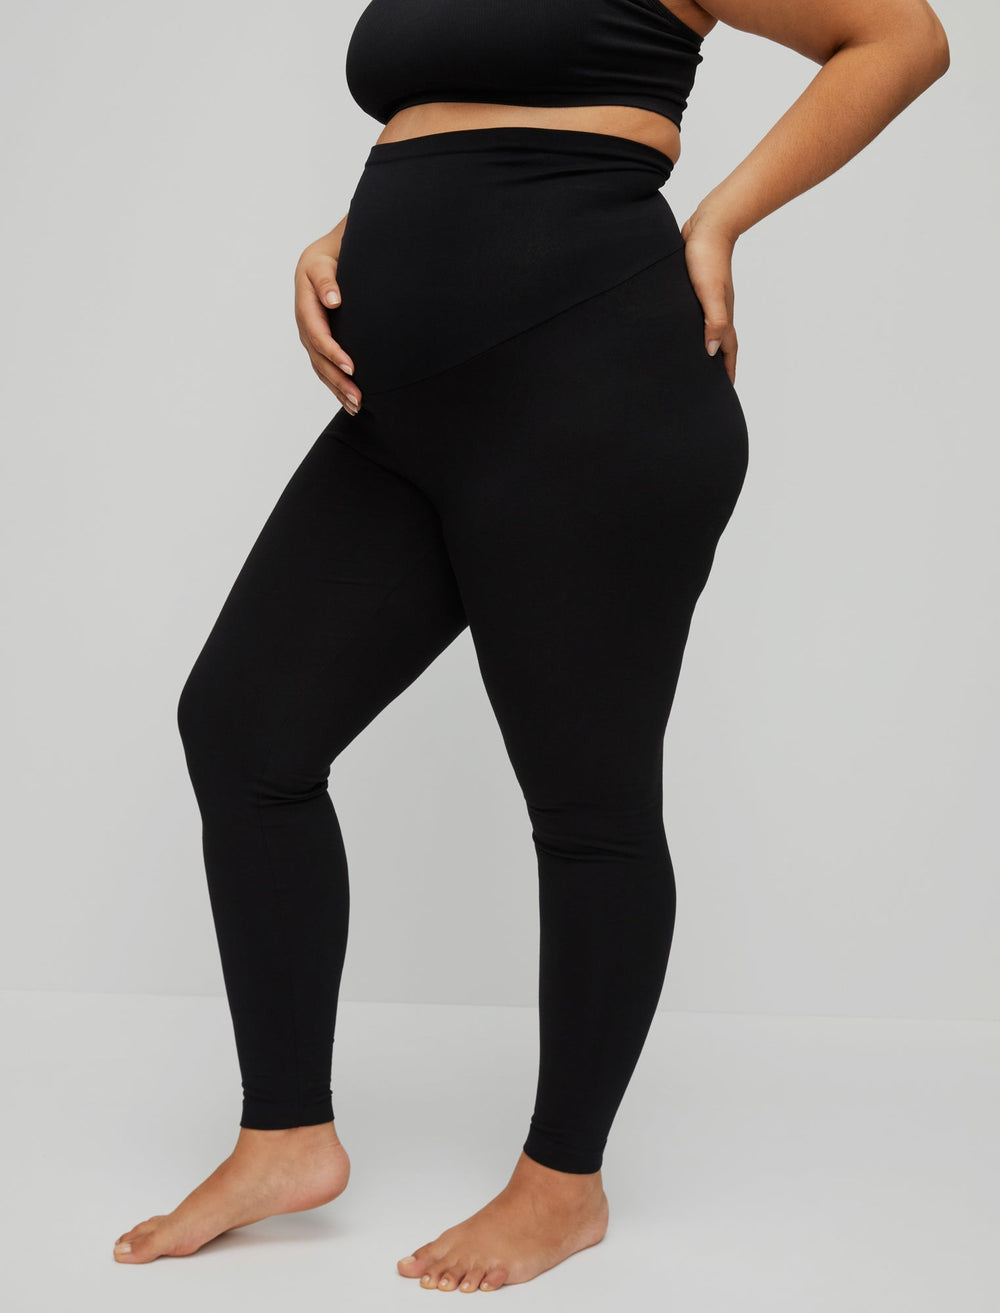 Plus Size Maternity Leggings Pattern PDF, L-4XL  Maternity leggings  pattern, Leggings pattern, Plus size pregnancy